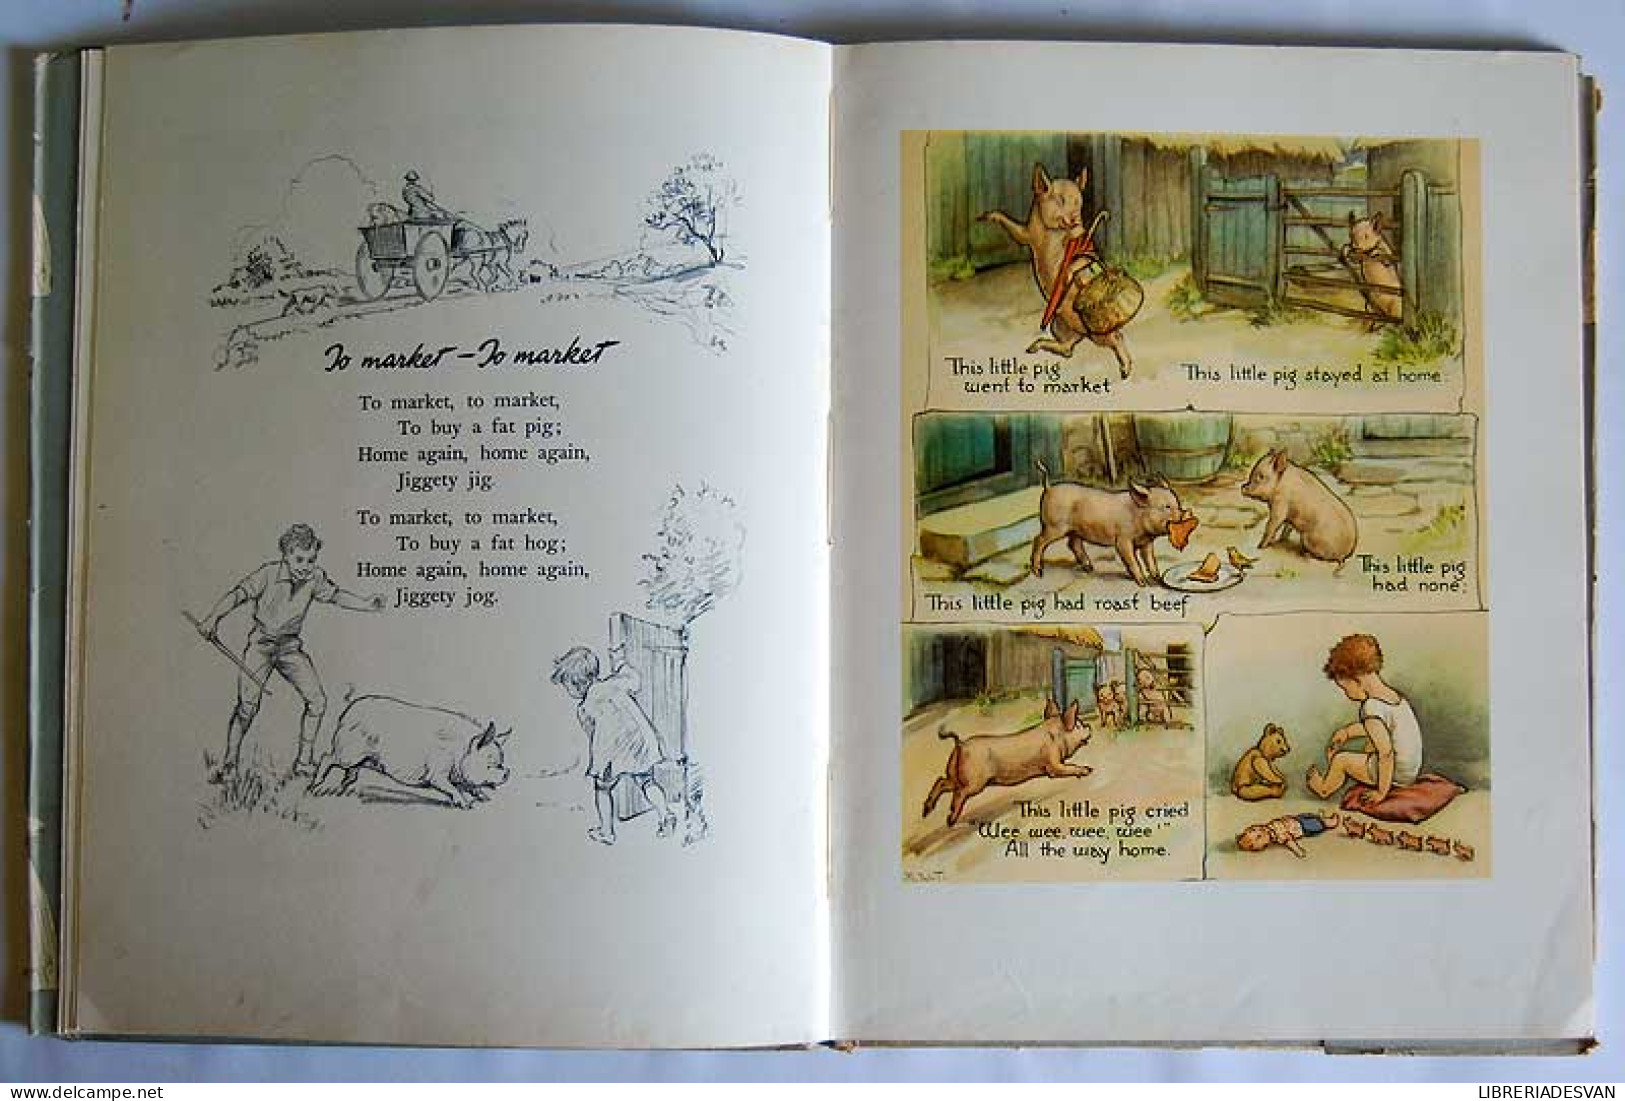 The Margaret Tarrant Nursery Rhyme Book